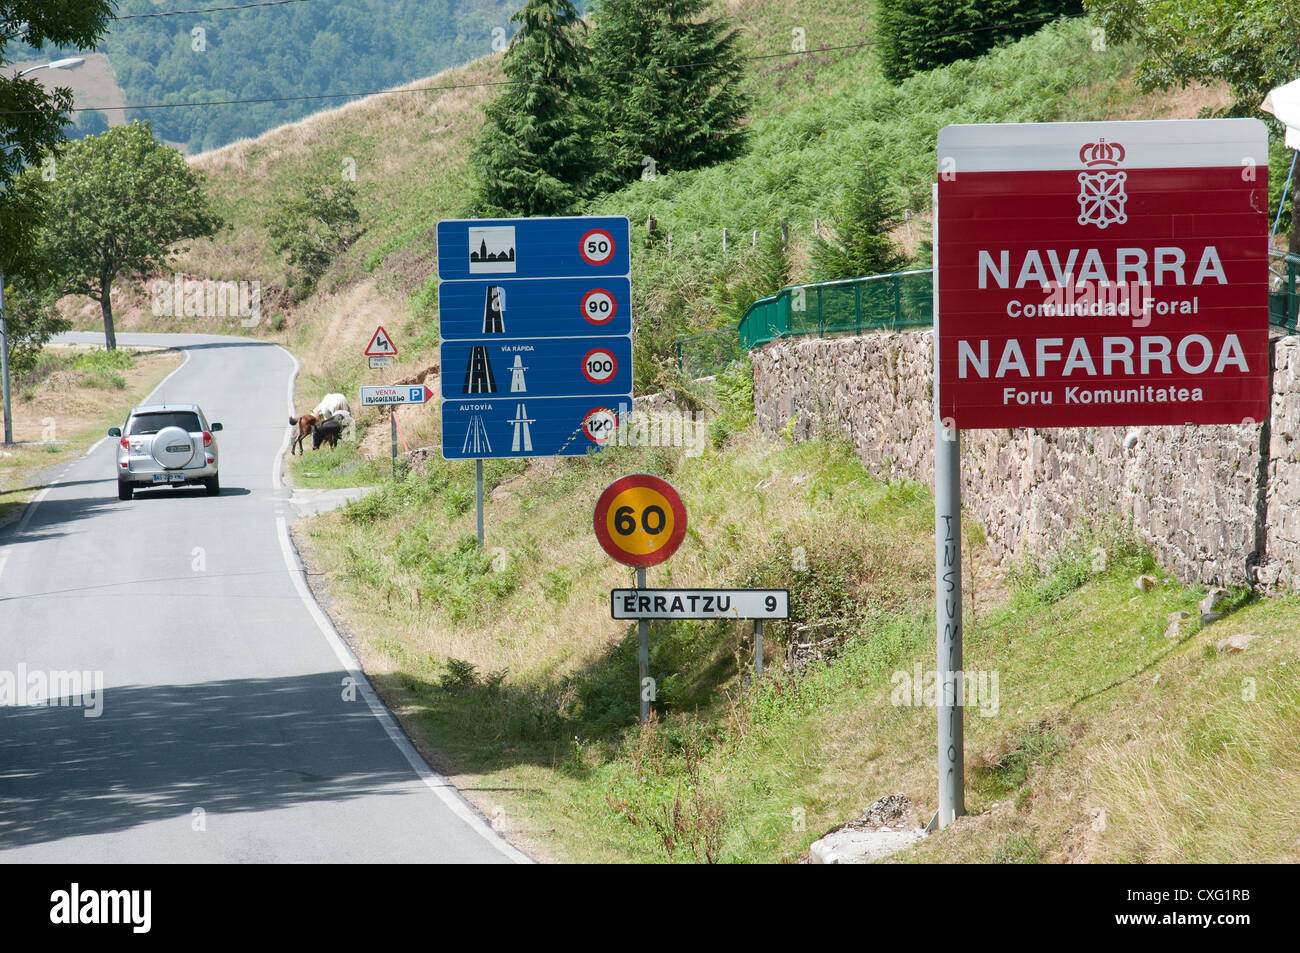 Frontière espagnole à Navarre dans les Pyrénées randonnée automobile vitesse vitesse véhicule avis roadsign signe Espagne Banque D'Images